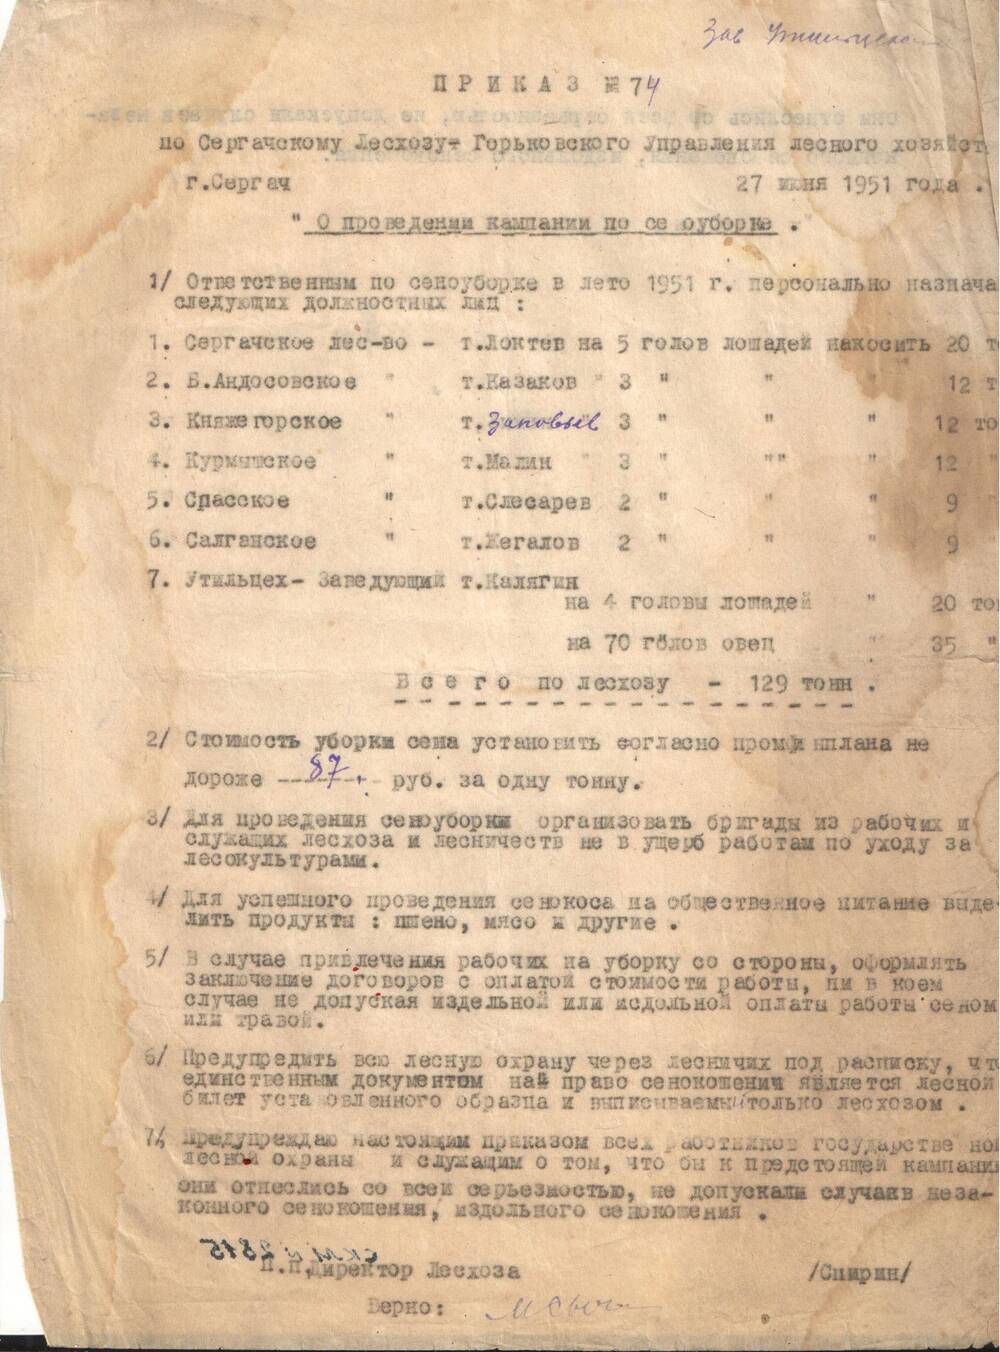 Приказ № 74 от 17.06.1951 г по Сергачскому лесхозу О проведении кампании по сеноуборке.